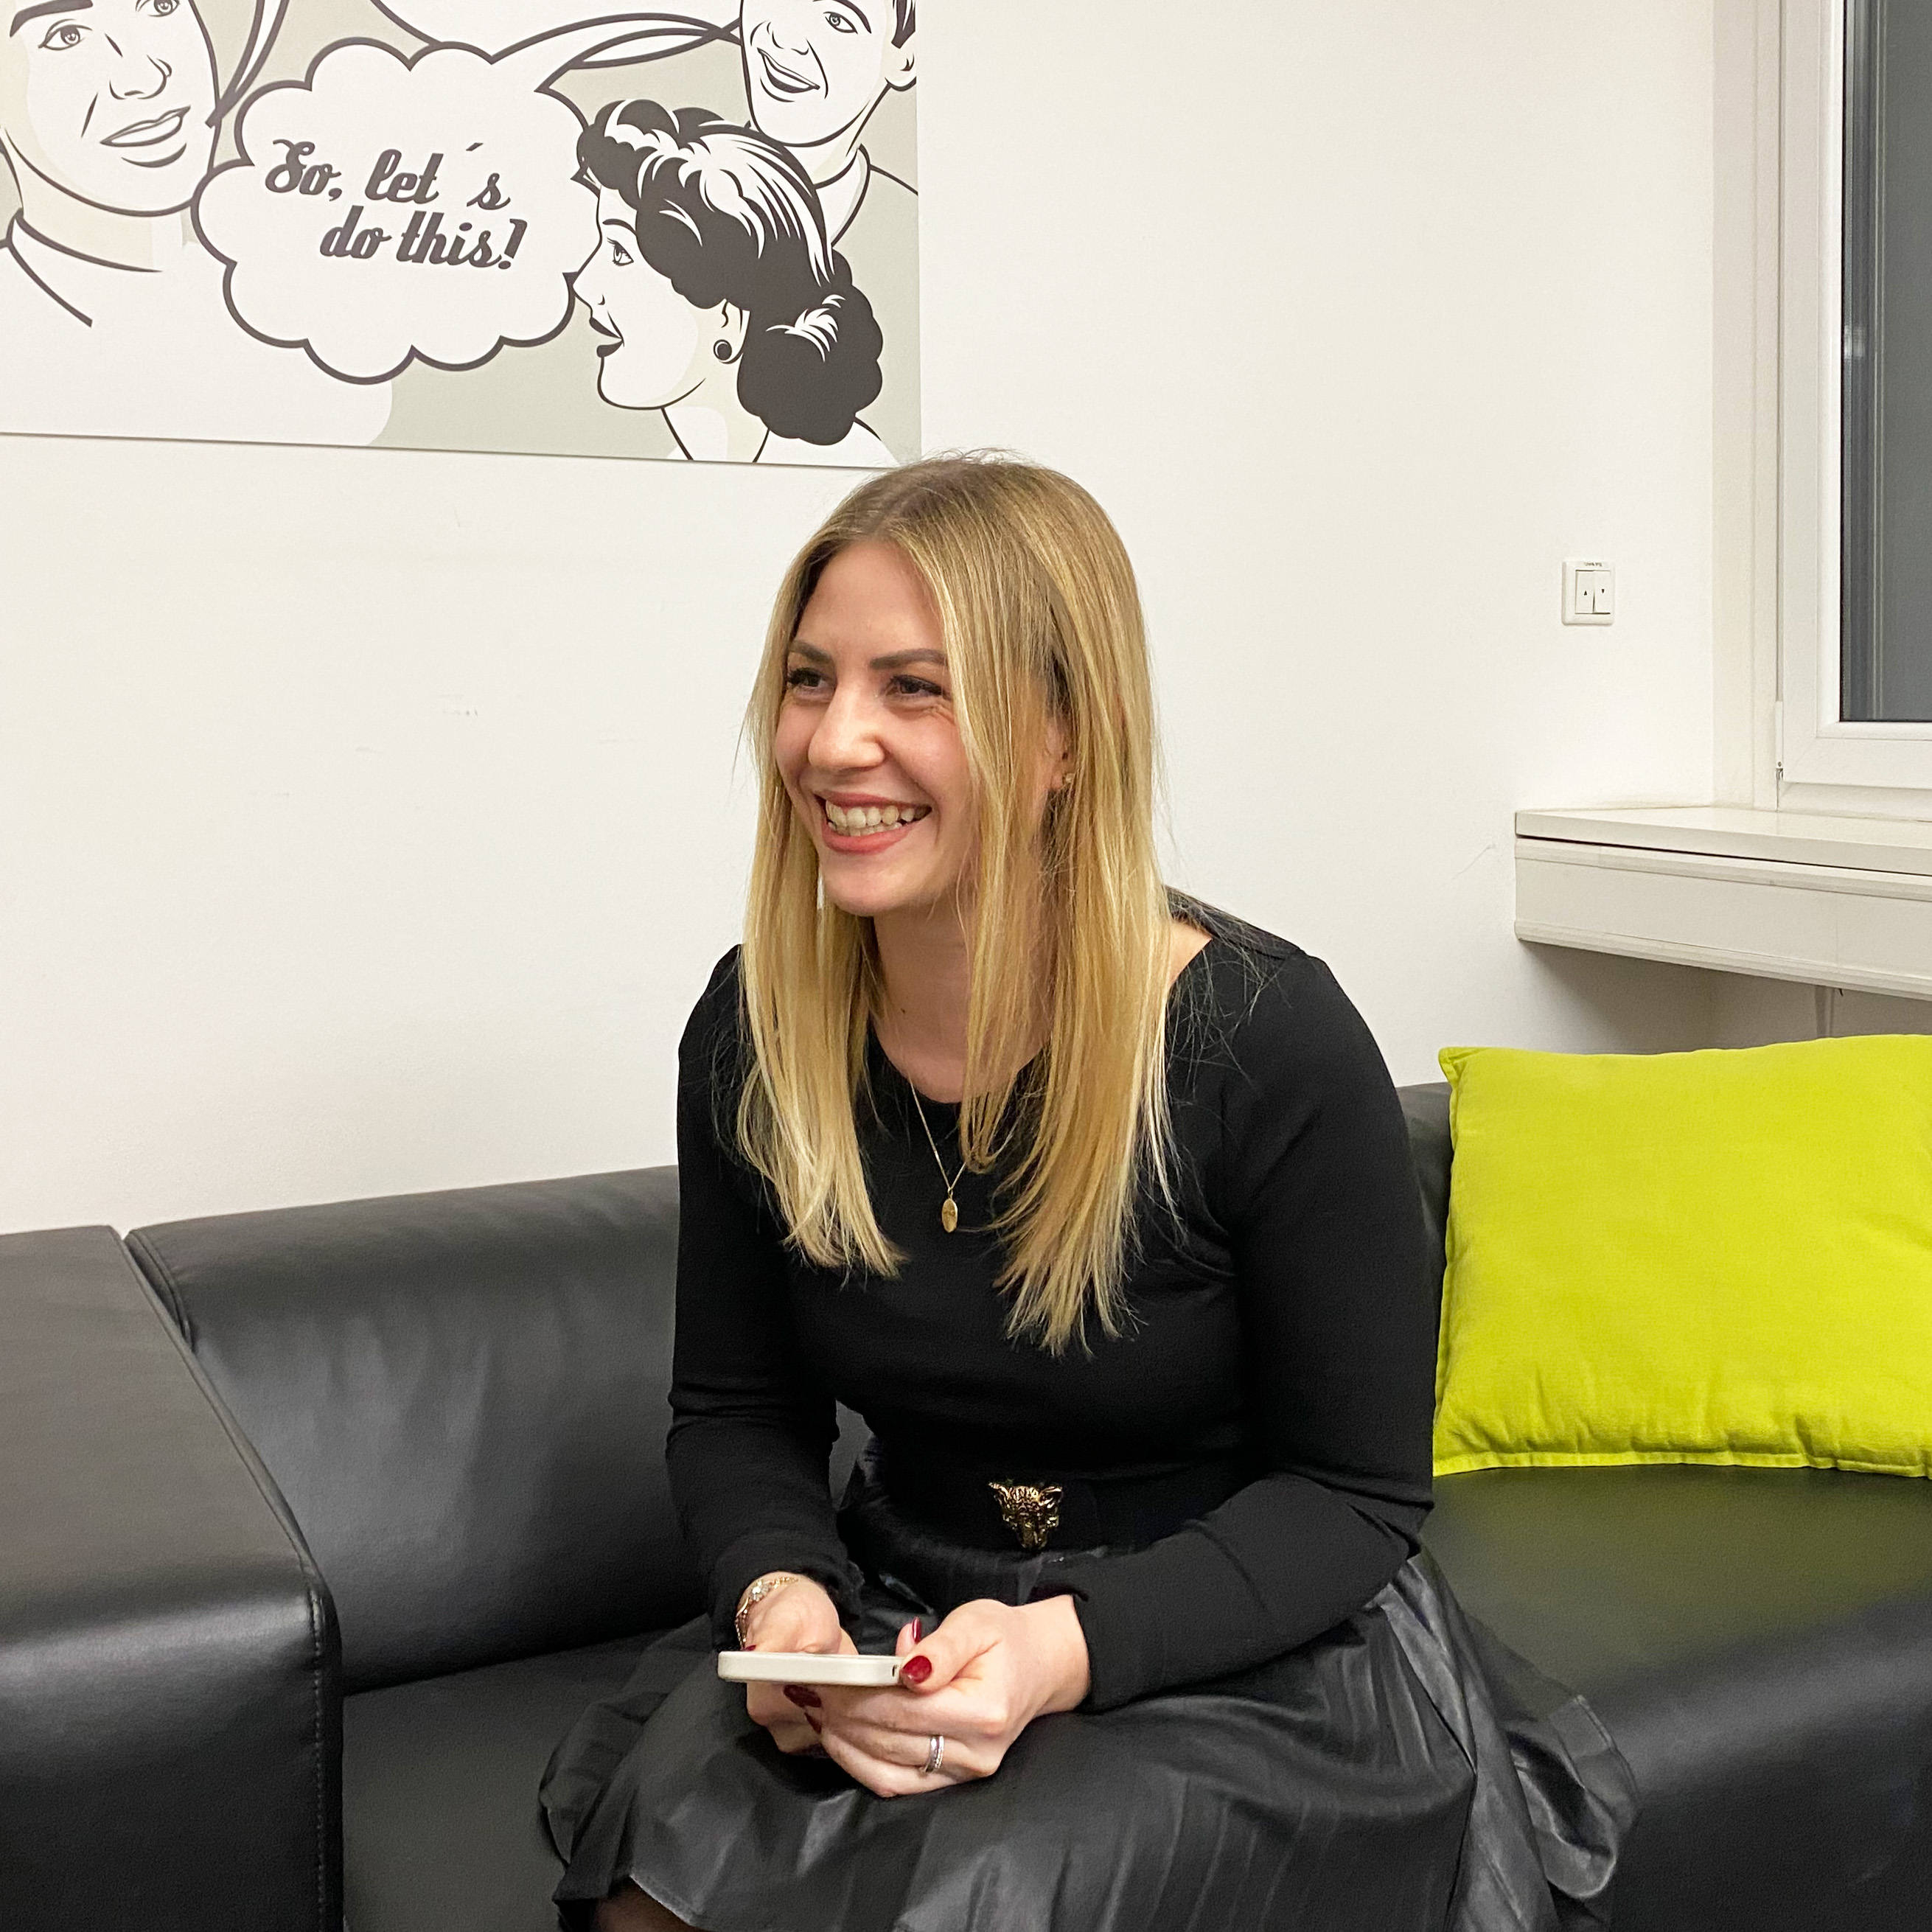 Unsere neue Kollegin Alessandra lächelnd während unseres Interviews im ottomisu Office in Heidelberg.